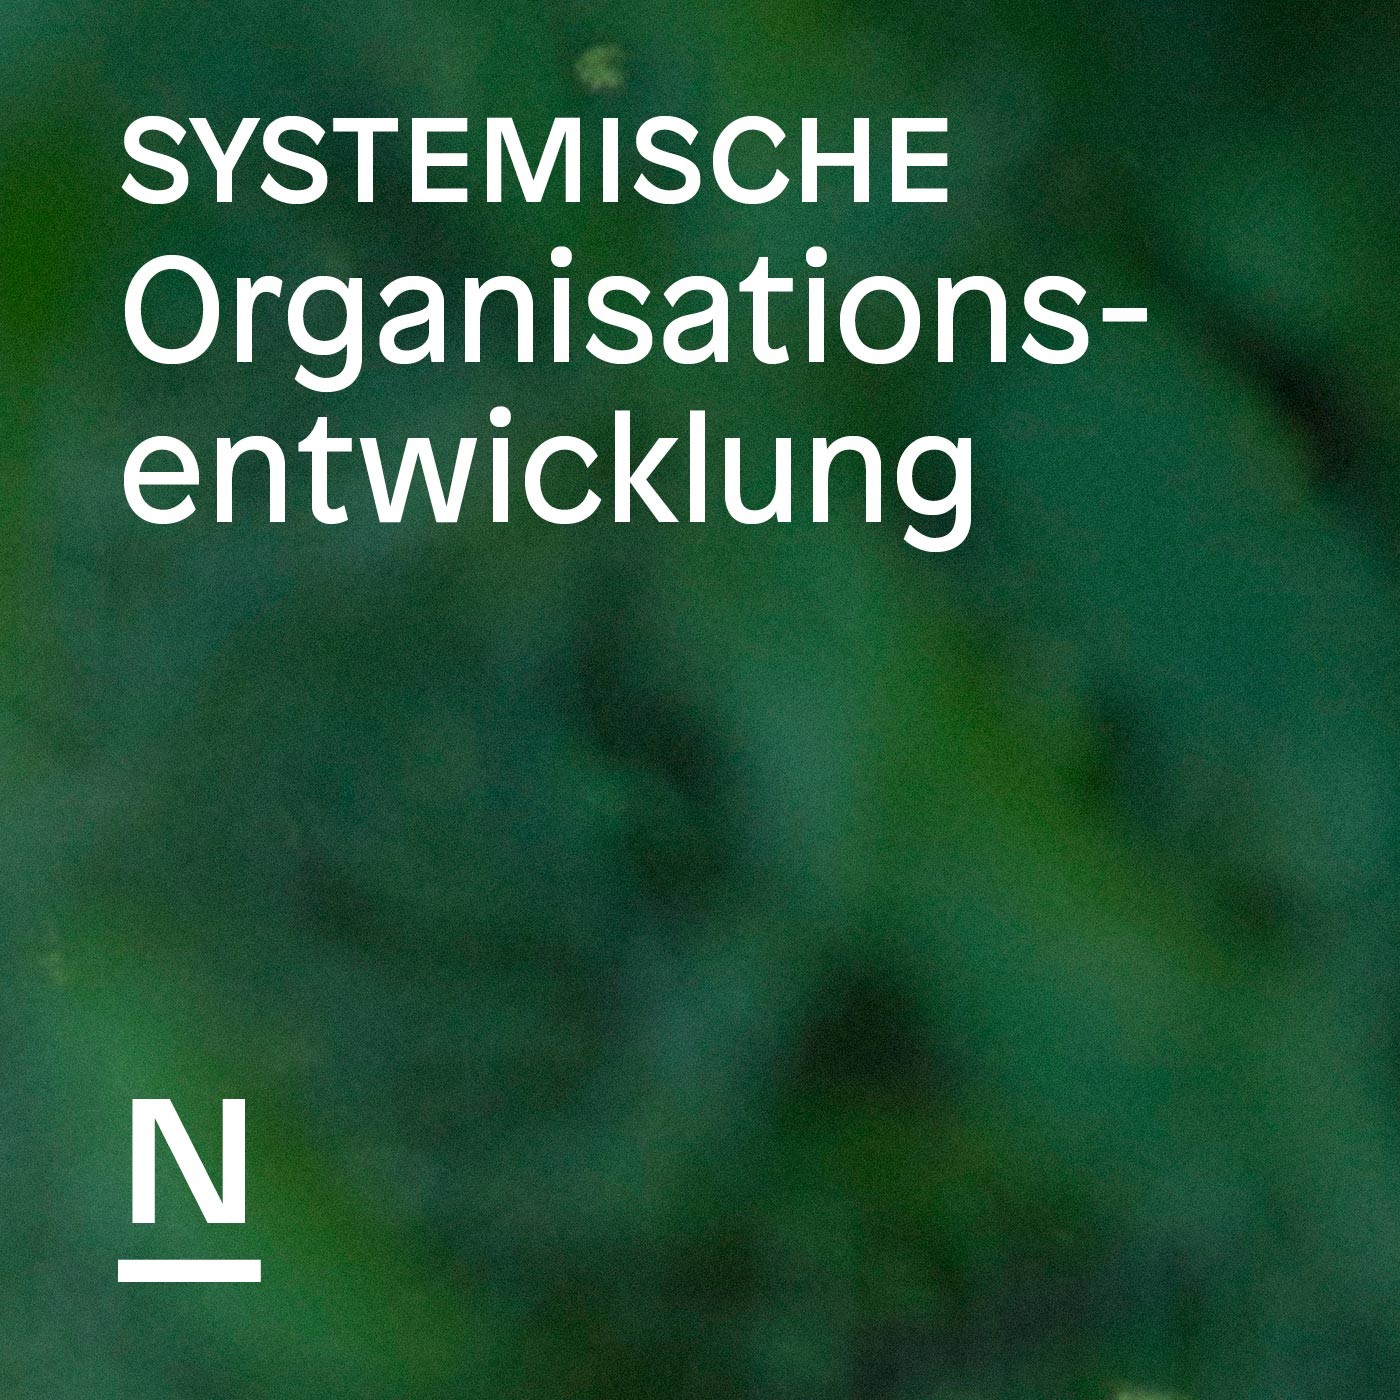 Systemische Organisationsentwicklung – Der Podcast der Beratergruppe Neuwaldegg